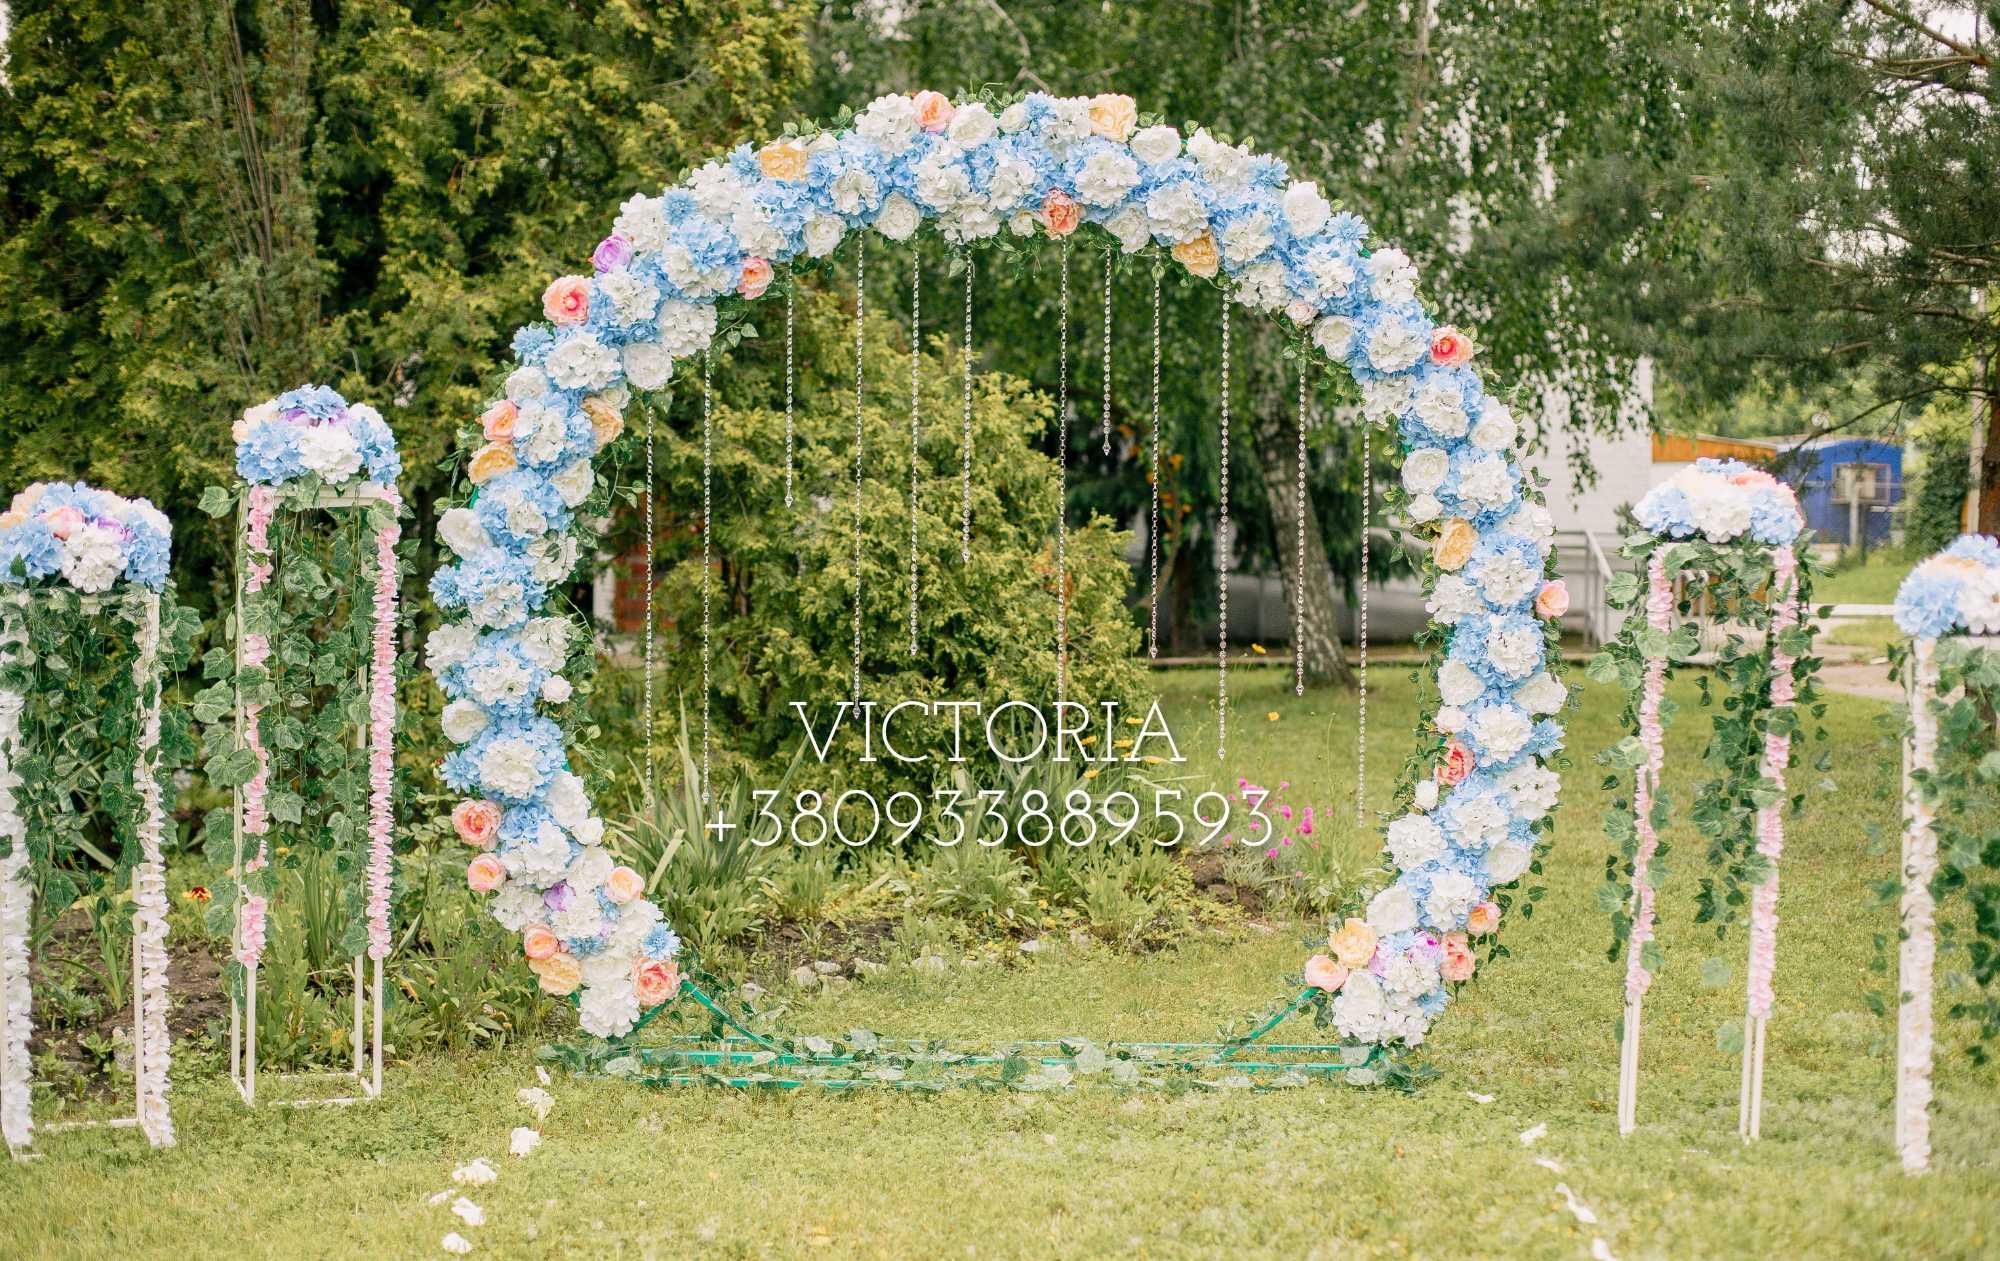 ПРОДАМ Свадебный декор, арка на свадьбу, фотозона